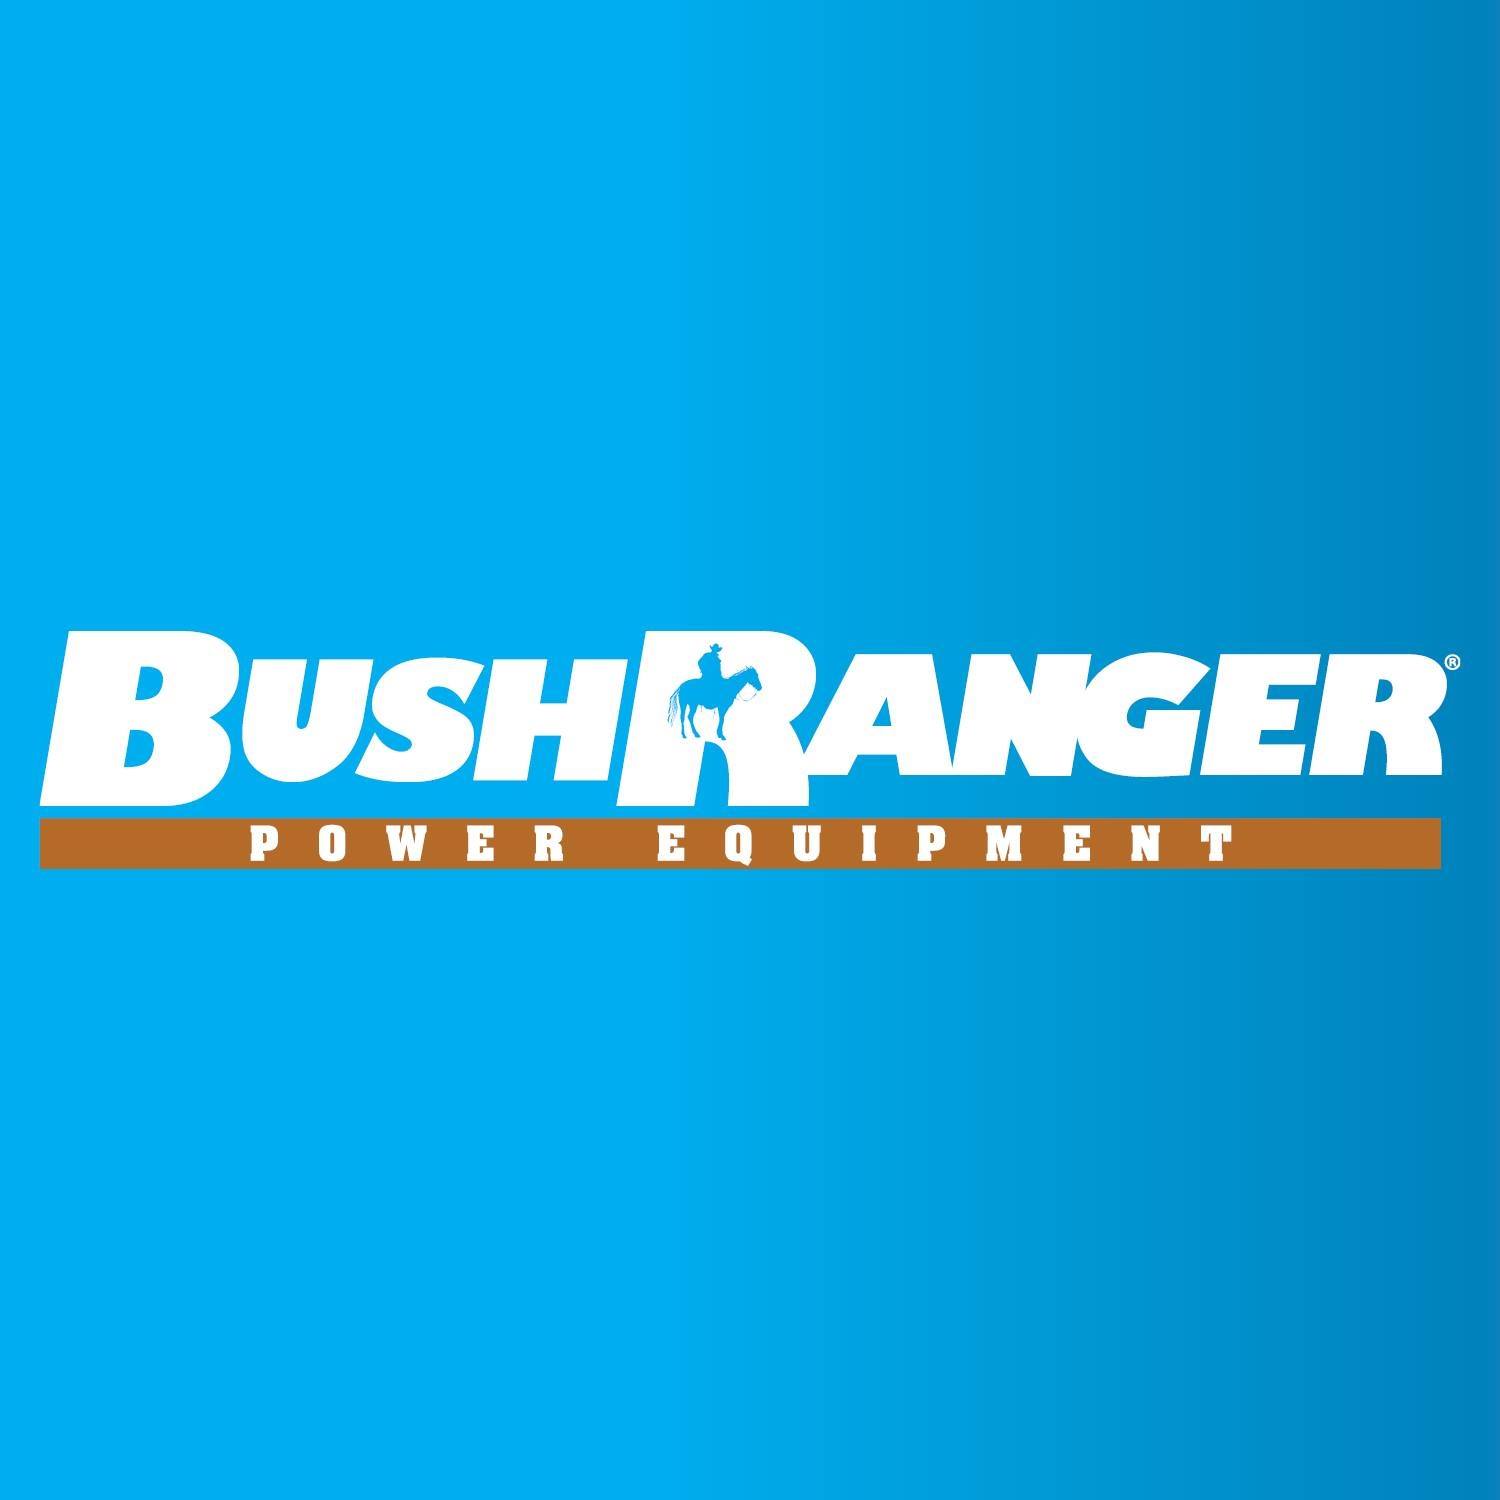 Bushranger Power Equipment available at Robot Mowers Australia